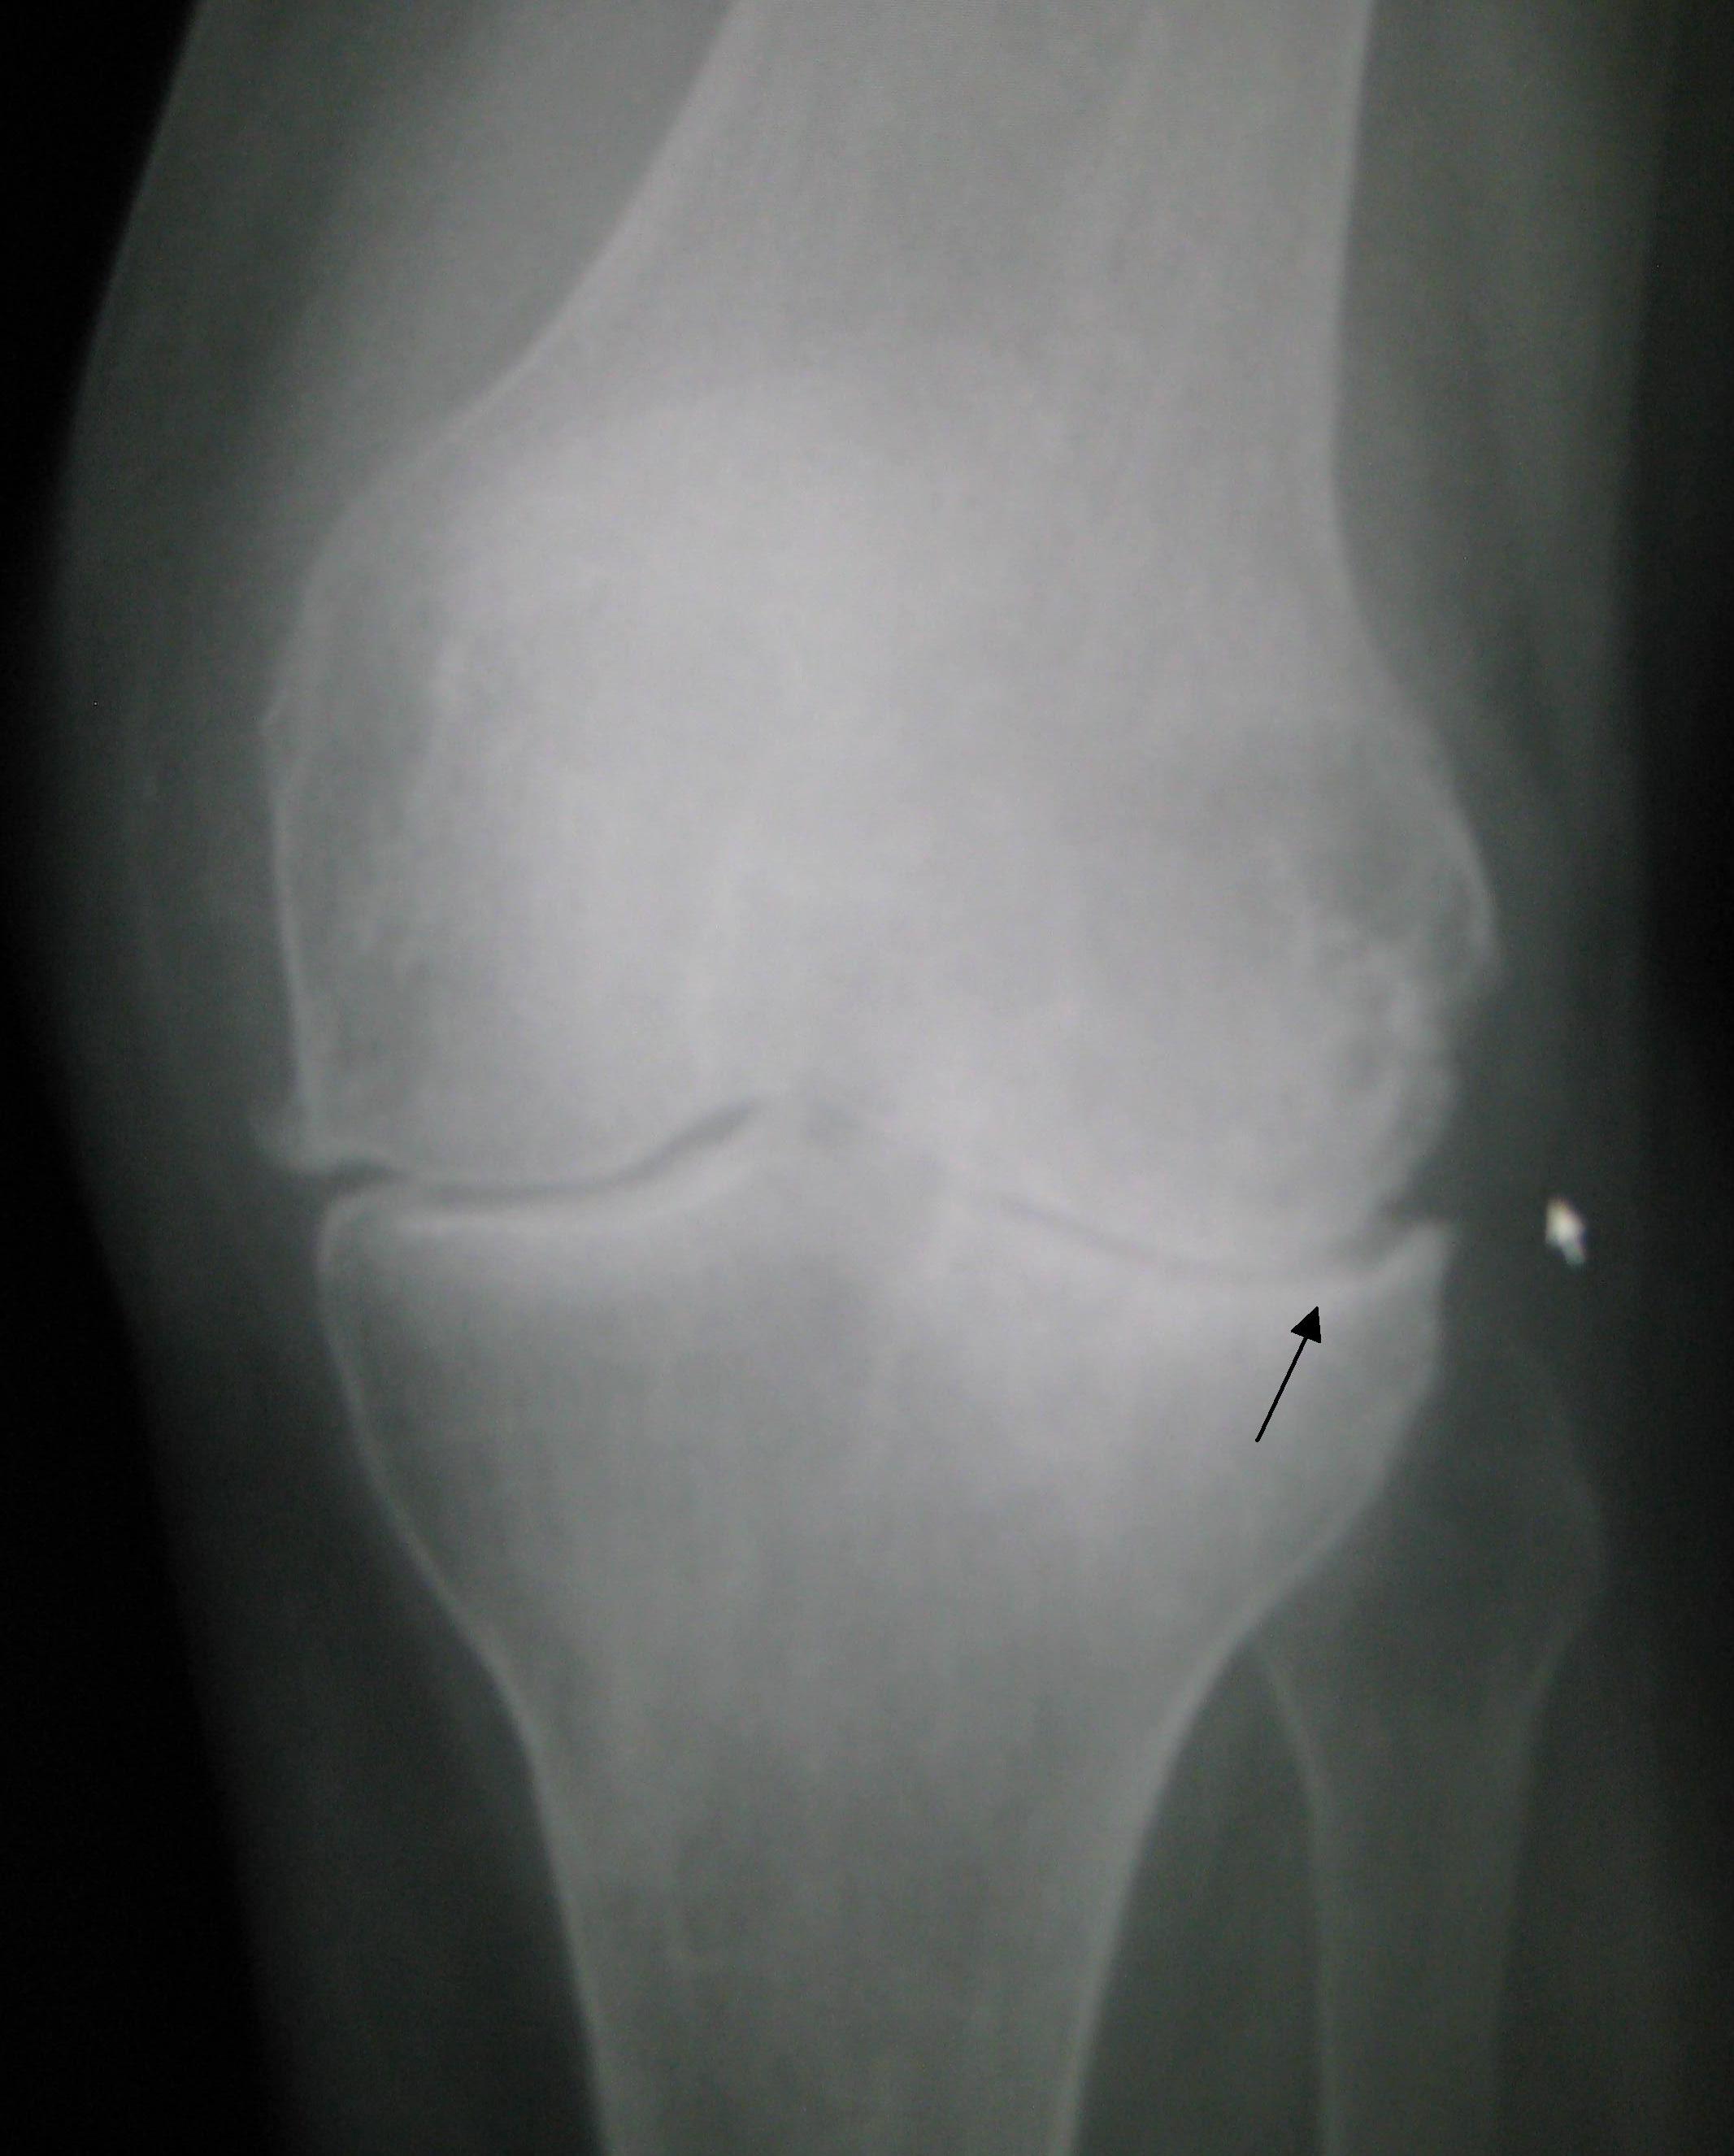 Osteoarthritis left knee